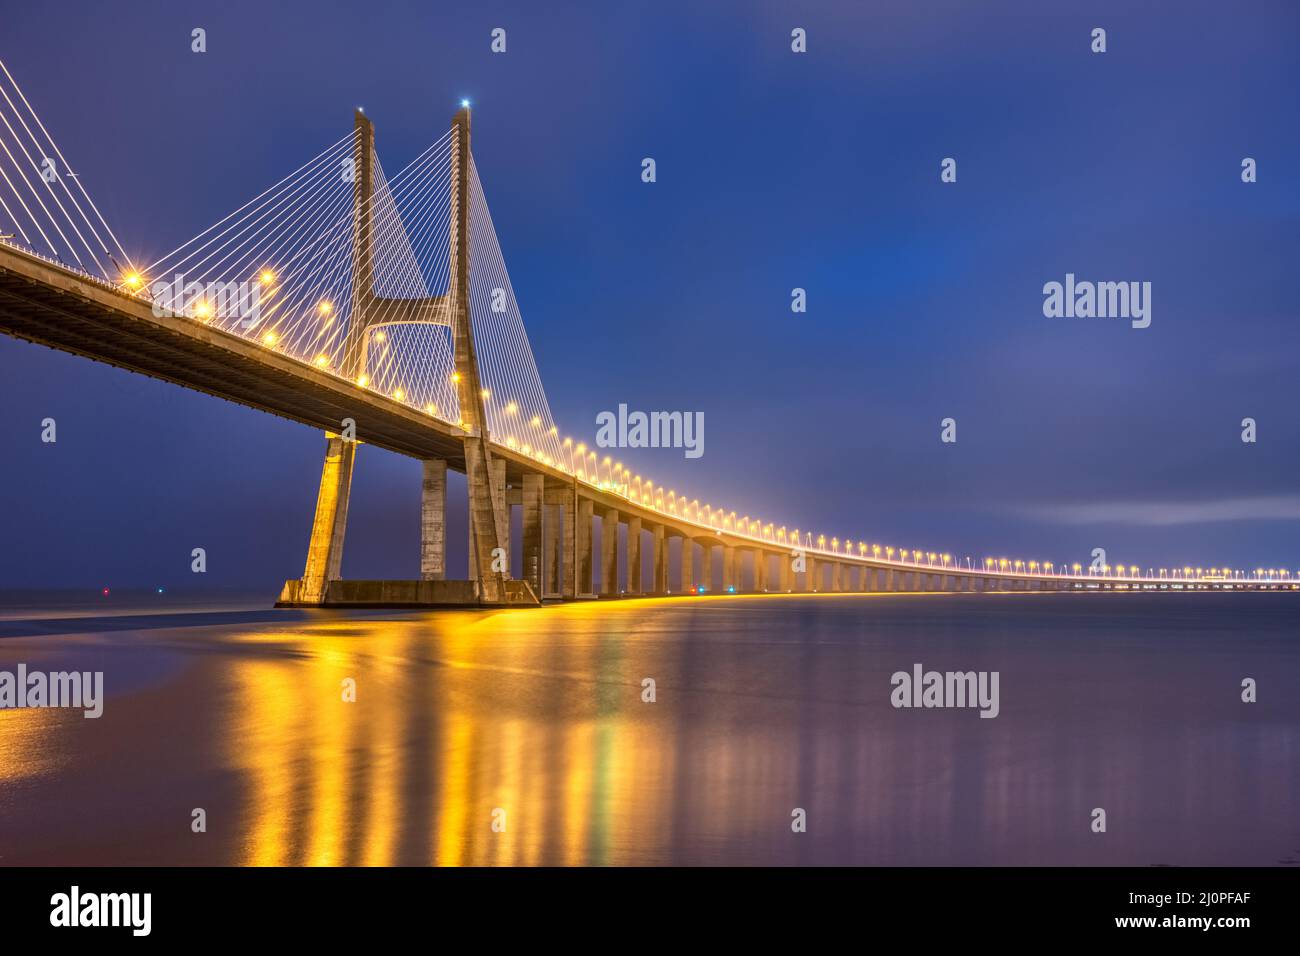 El imponente puente de cable Vasco da Gama, cruzando el río Tajo en Lisboa, Portugal, por la noche Foto de stock